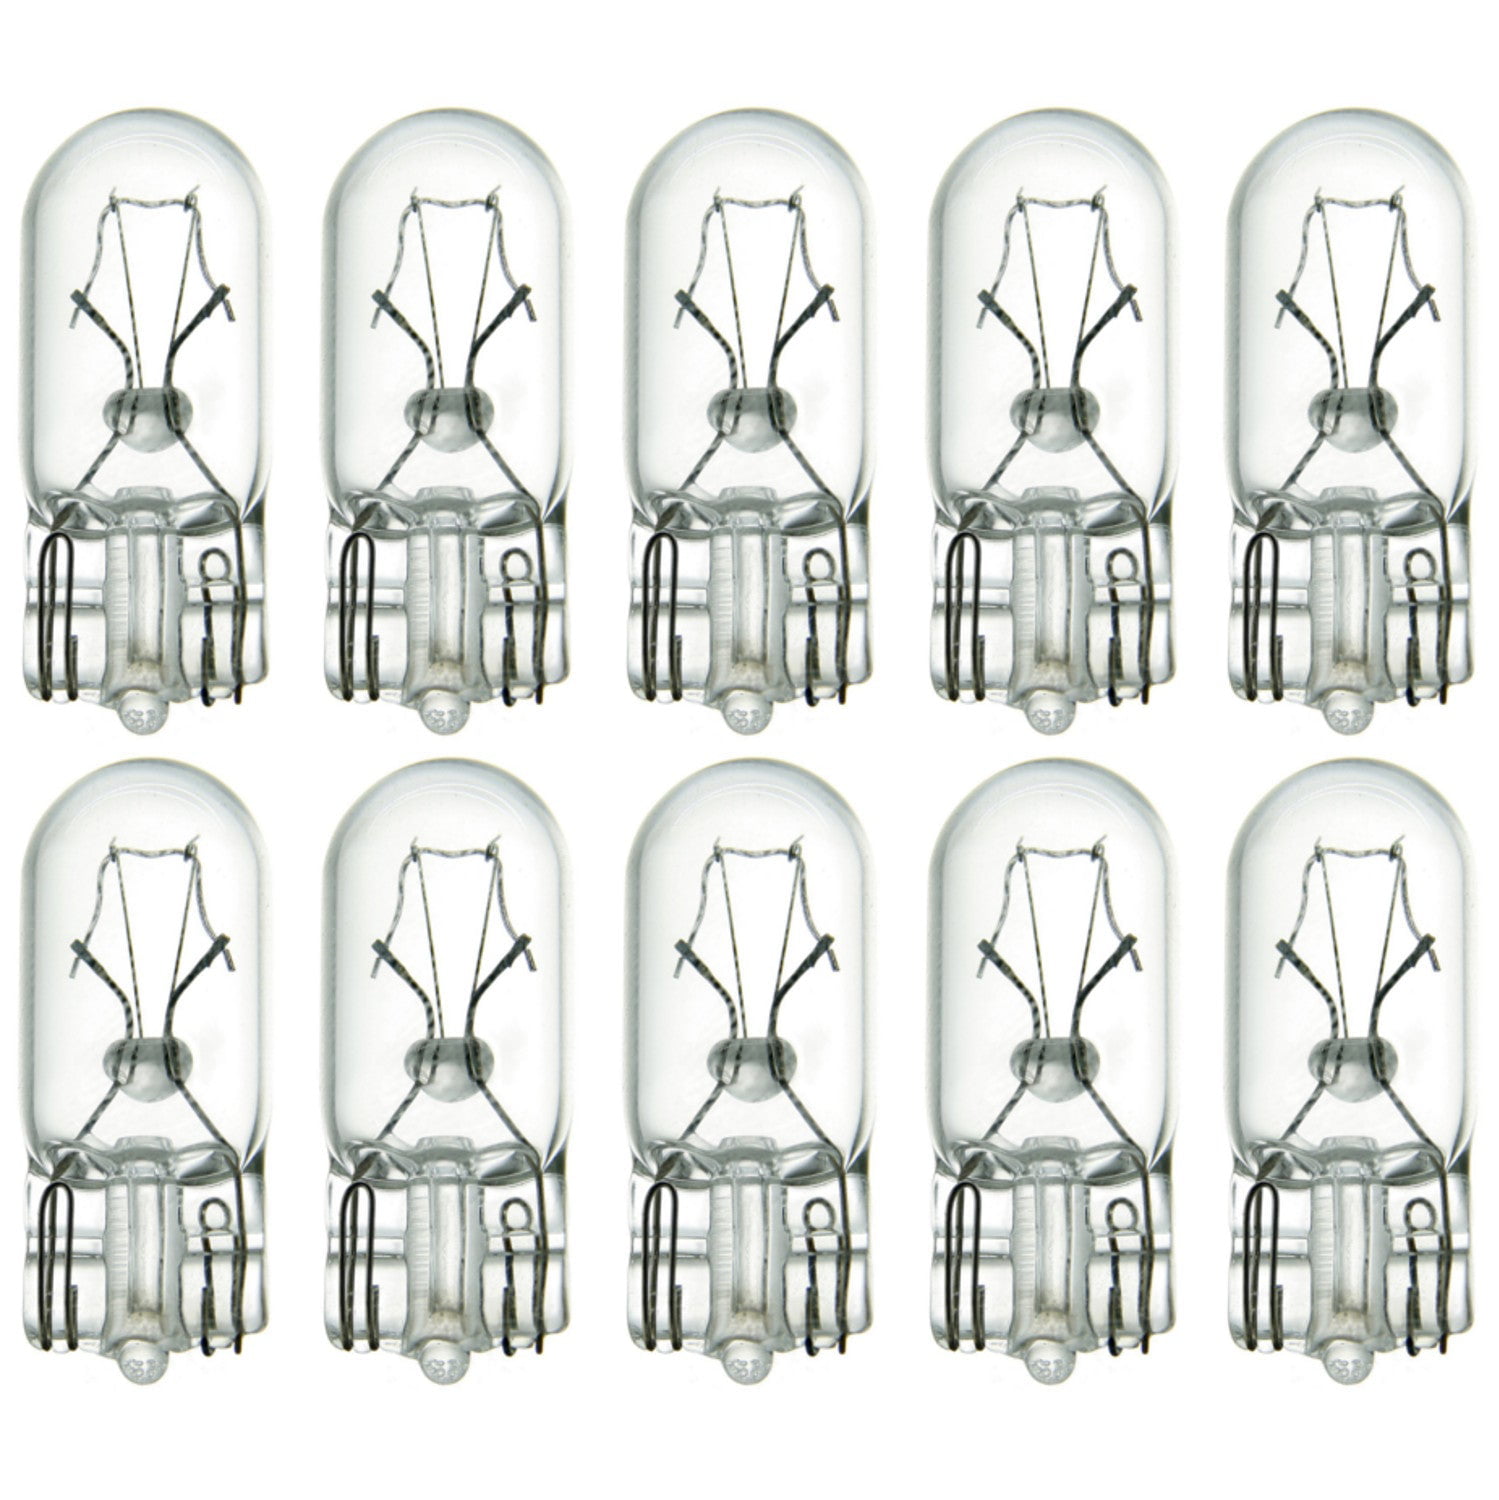 OCSParts 464 Miniature Light Bulb, 28 Volts, 0.17 Amps - Pack of 10 ...